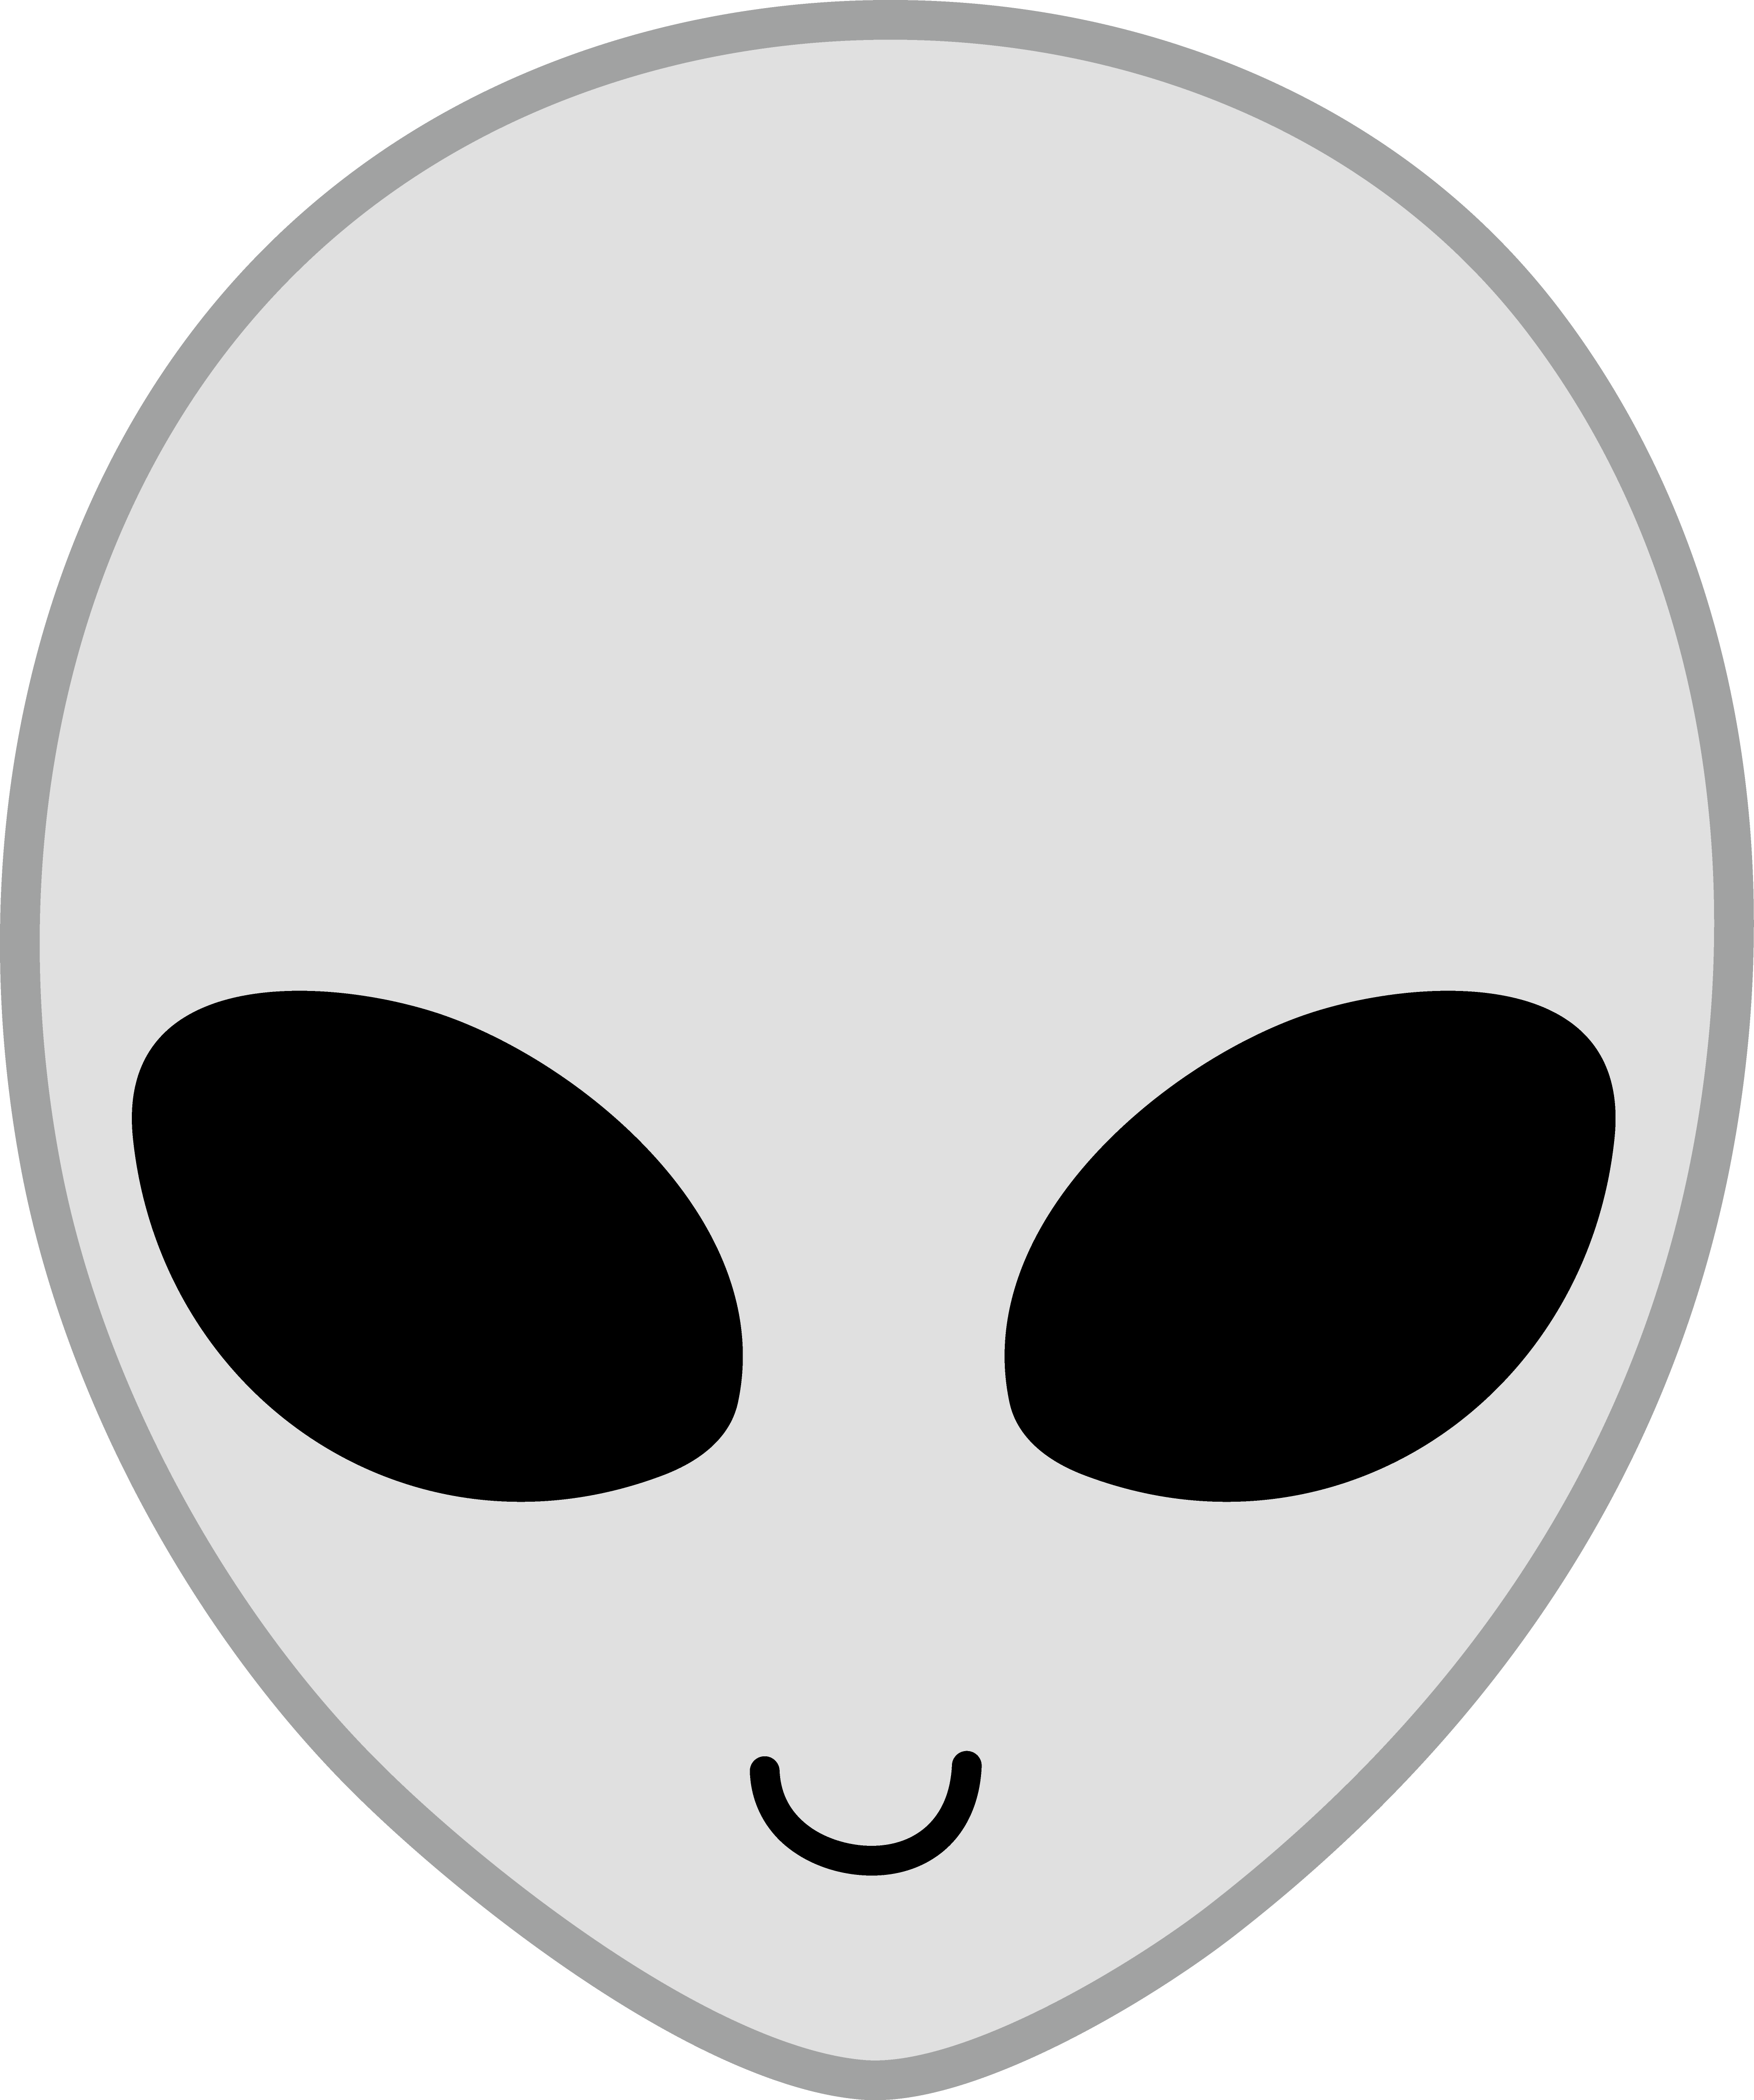 Cute Alien Logo - Free Cute Alien Pictures, Download Free Clip Art, Free Clip Art on ...